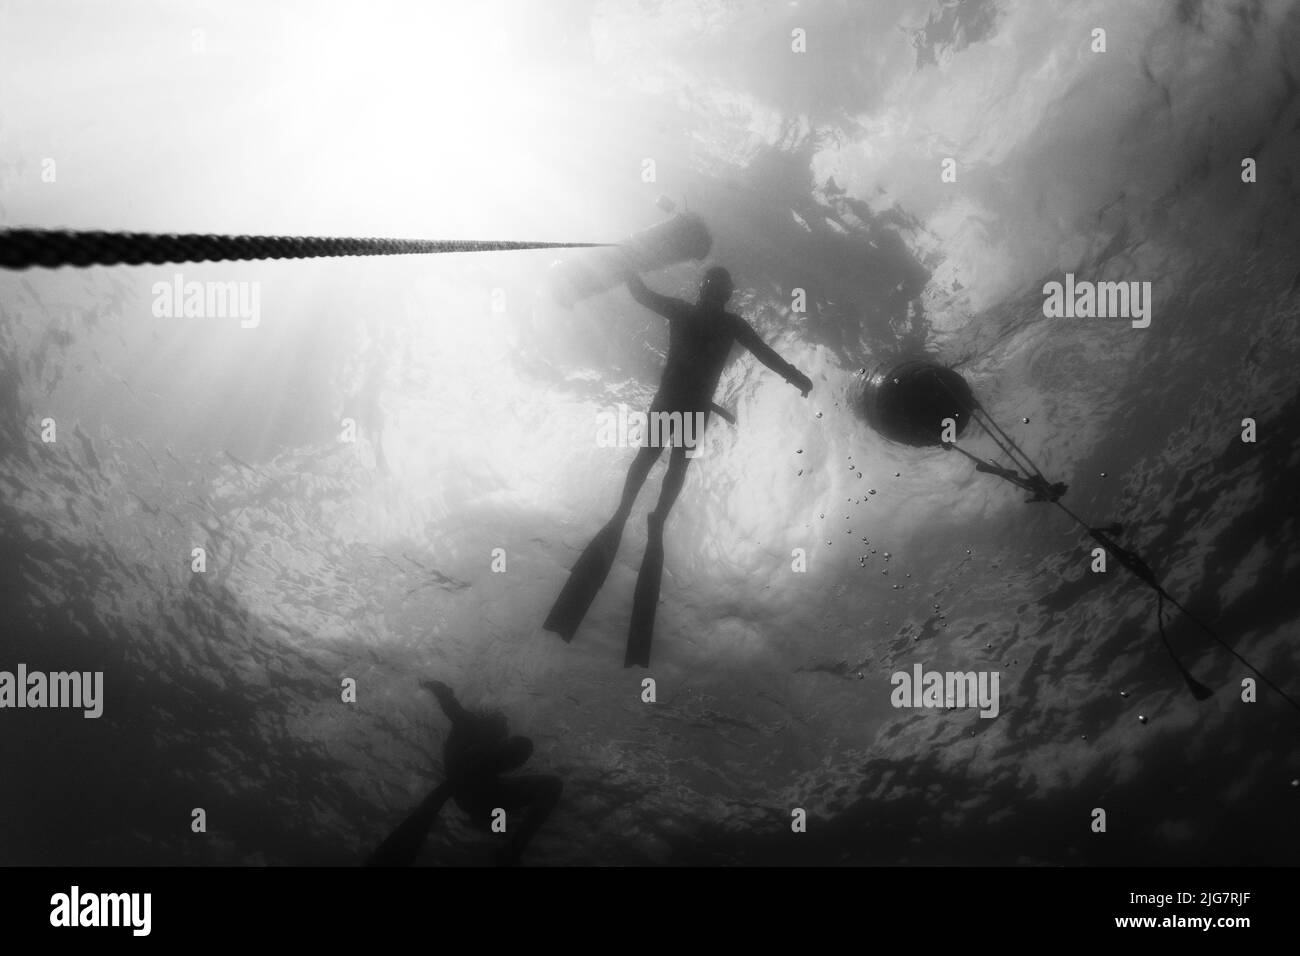 Un bianco e nero di una persona subacquea libera in mare Foto Stock